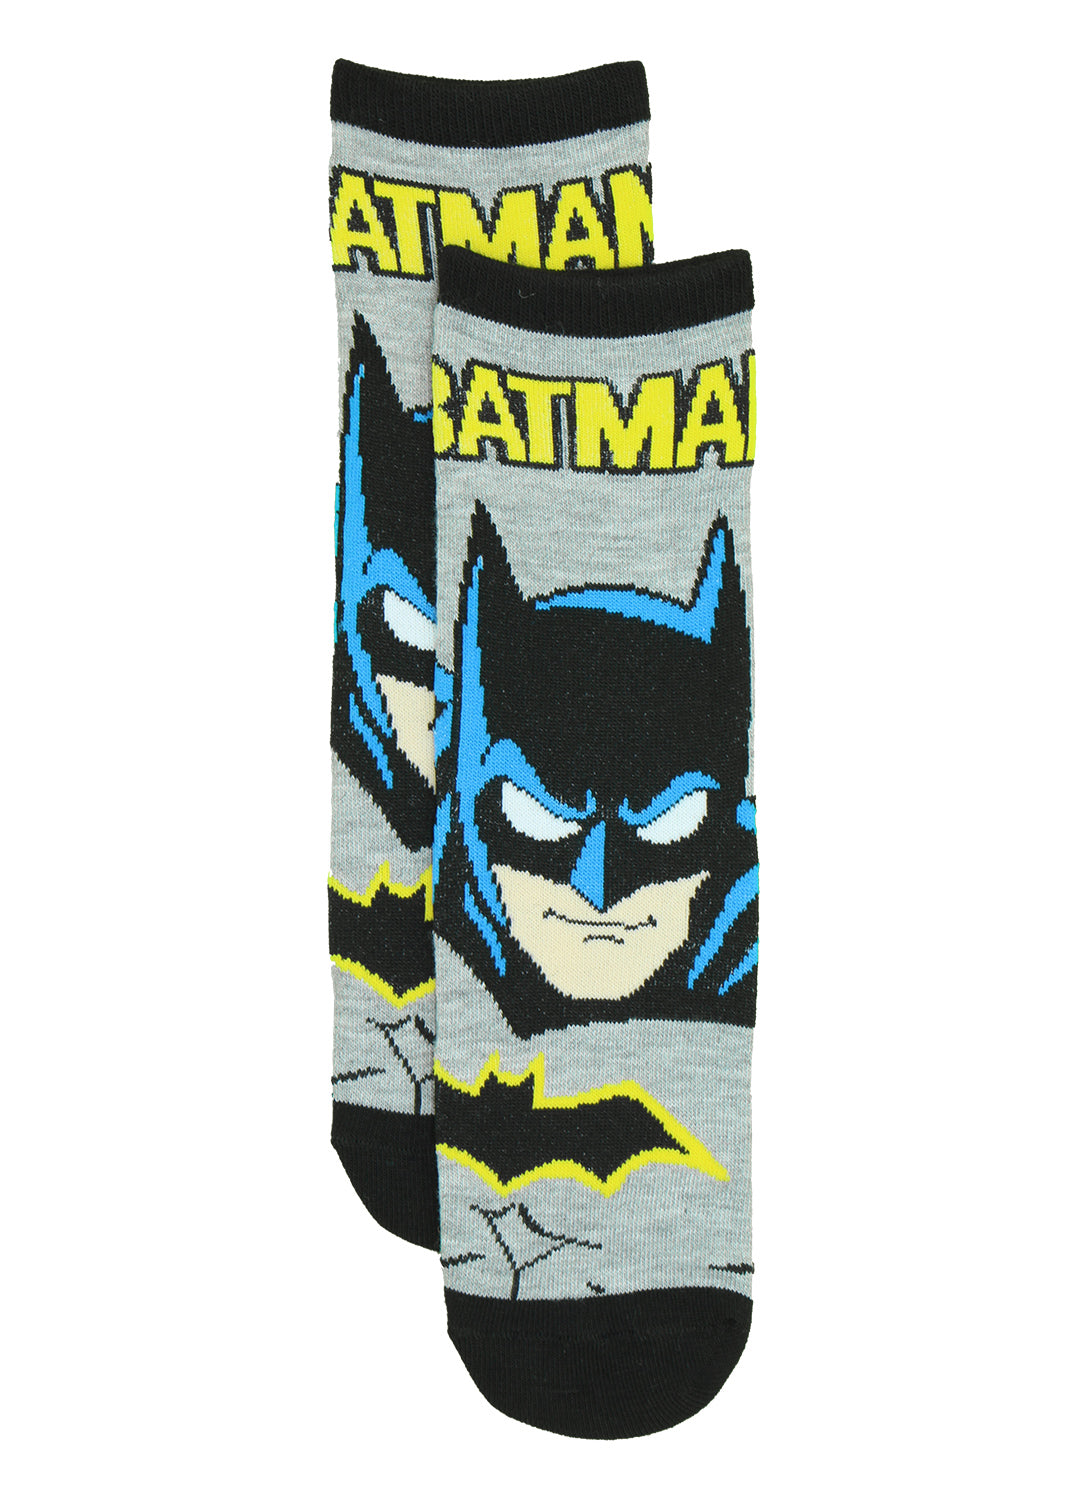 Chaussettes Batman rétro pour garçons - Paquet de 3